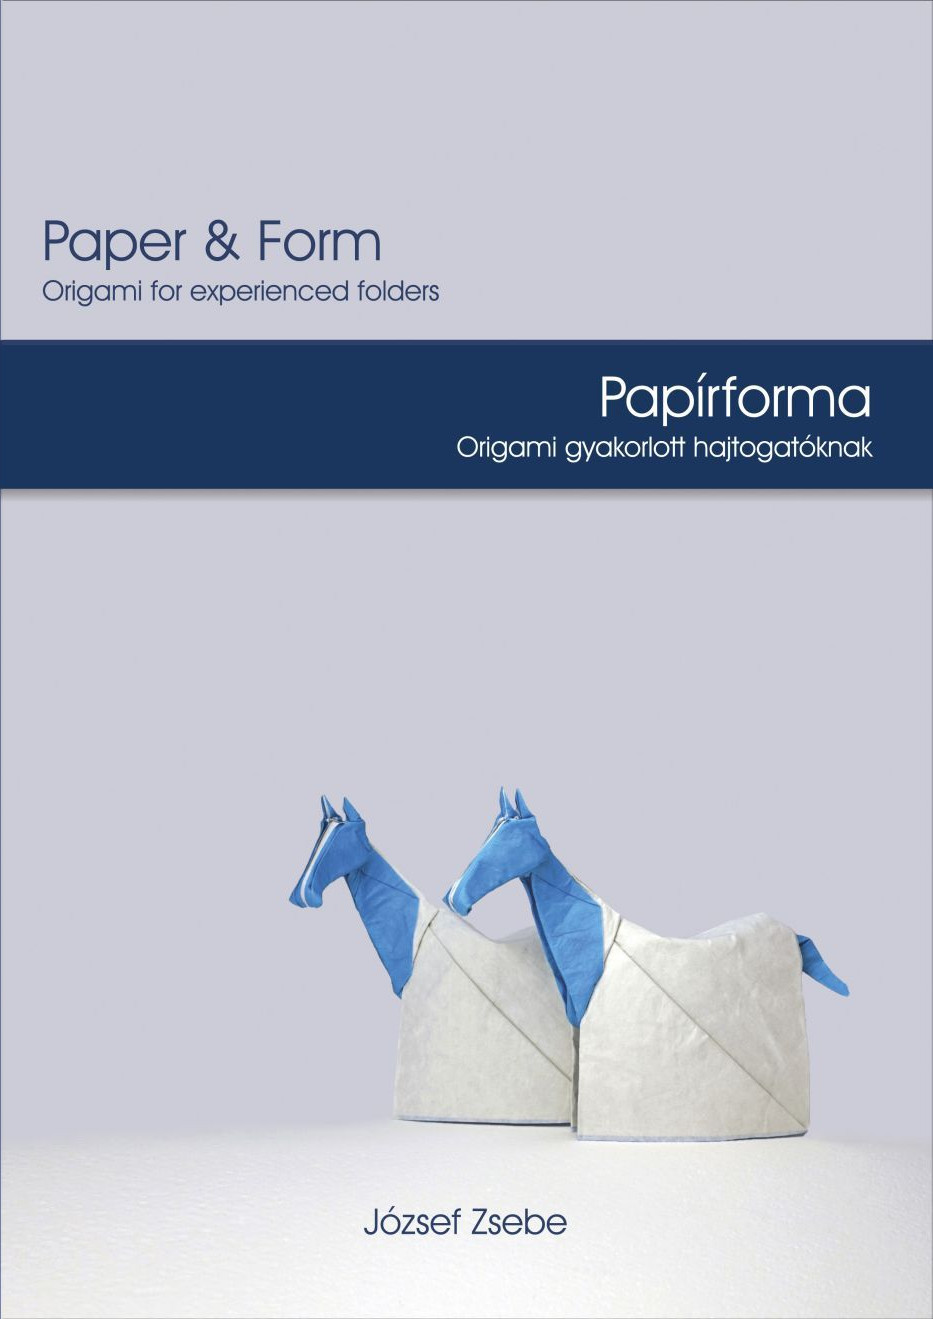 Paper & Form - Papírforma : page 78.